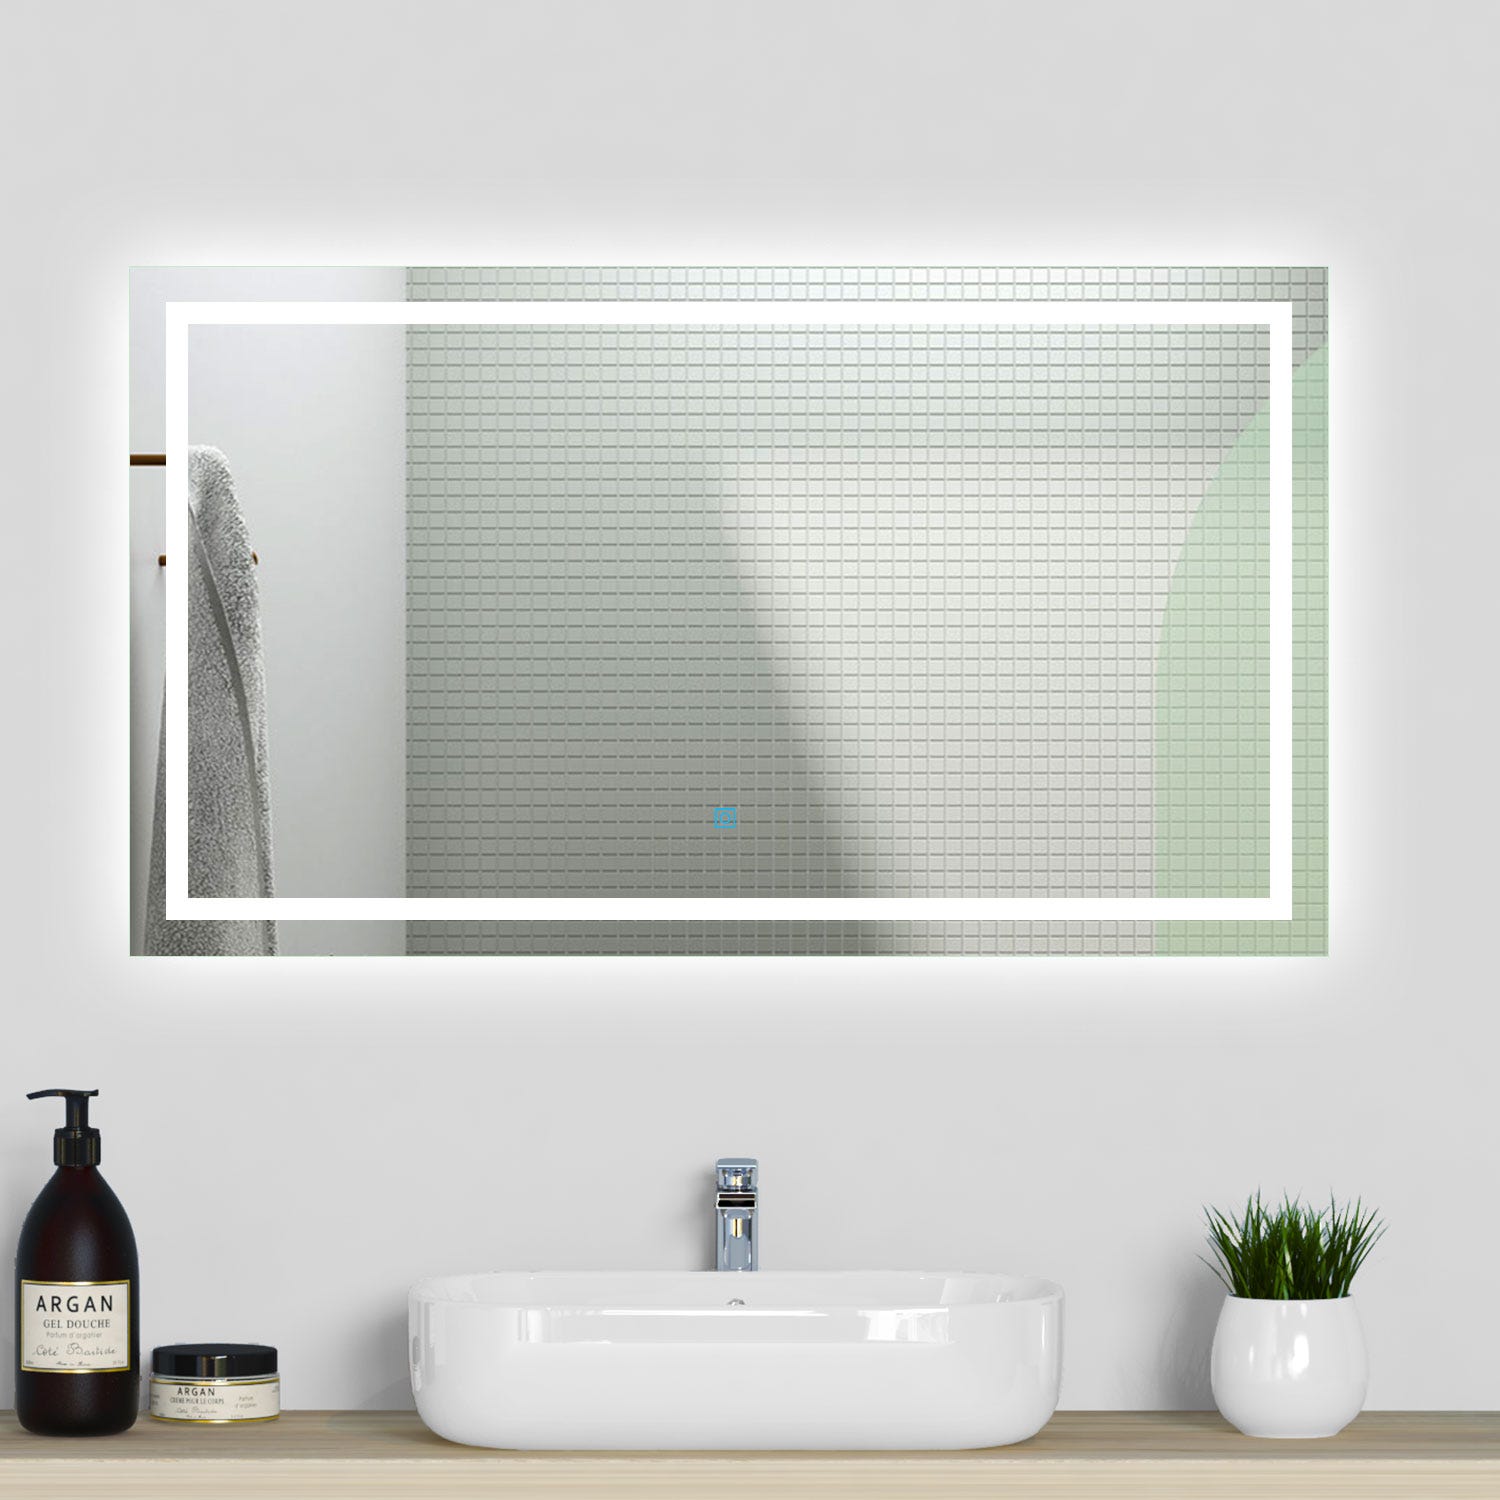 100 x 80 cm Espejo de baño led con iluminación, botón táctil,antivaho